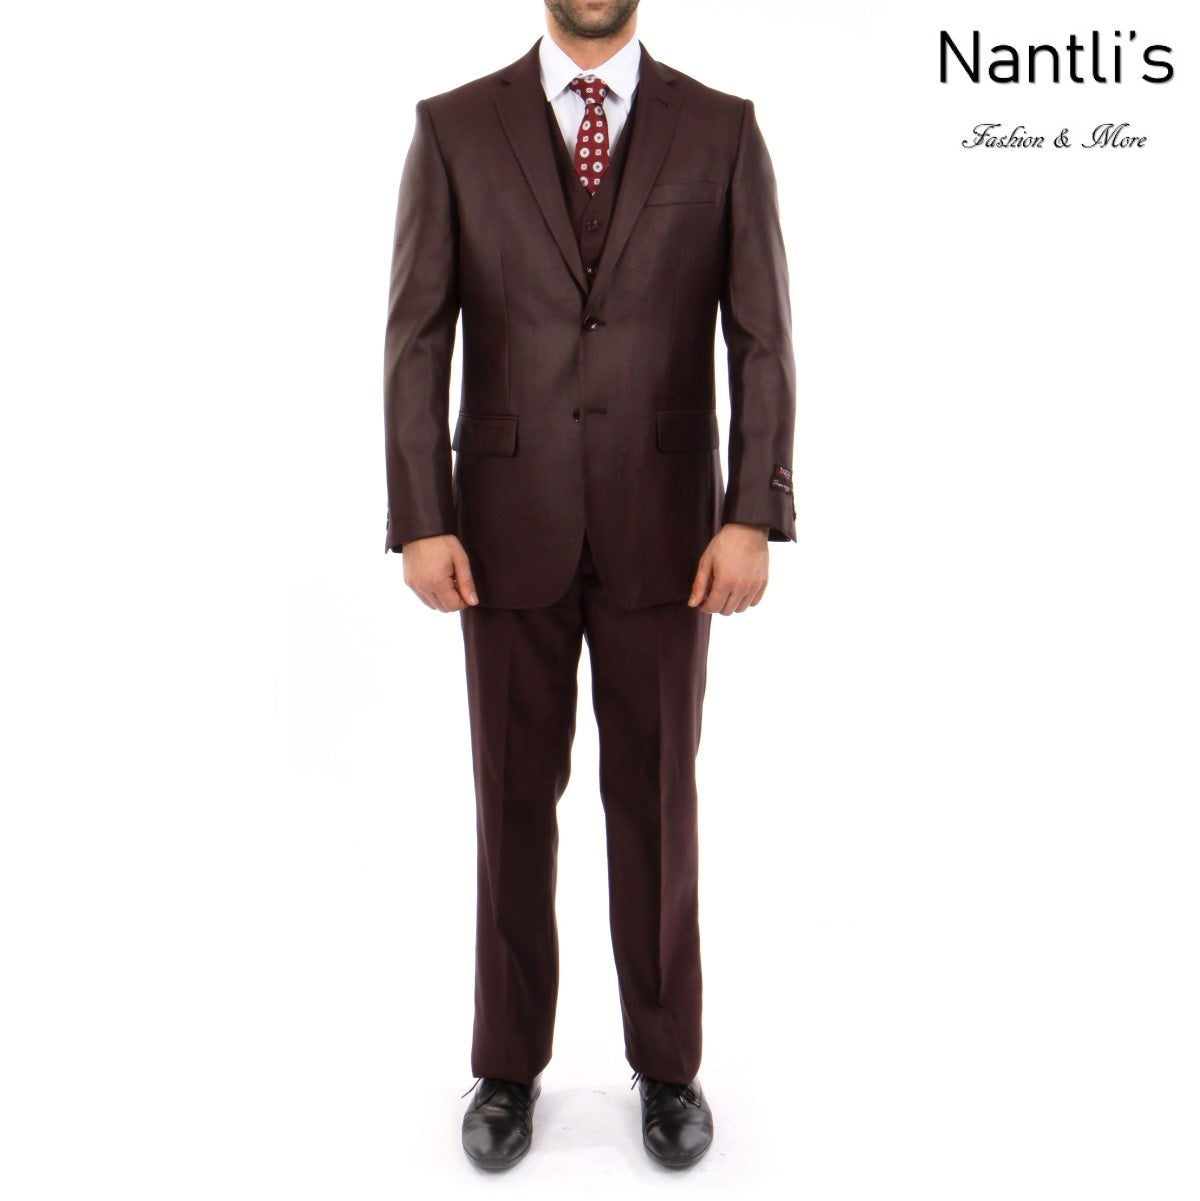 Traje Formal para Hombre TA-M158-12 Burgundy - Formal Suit for Men